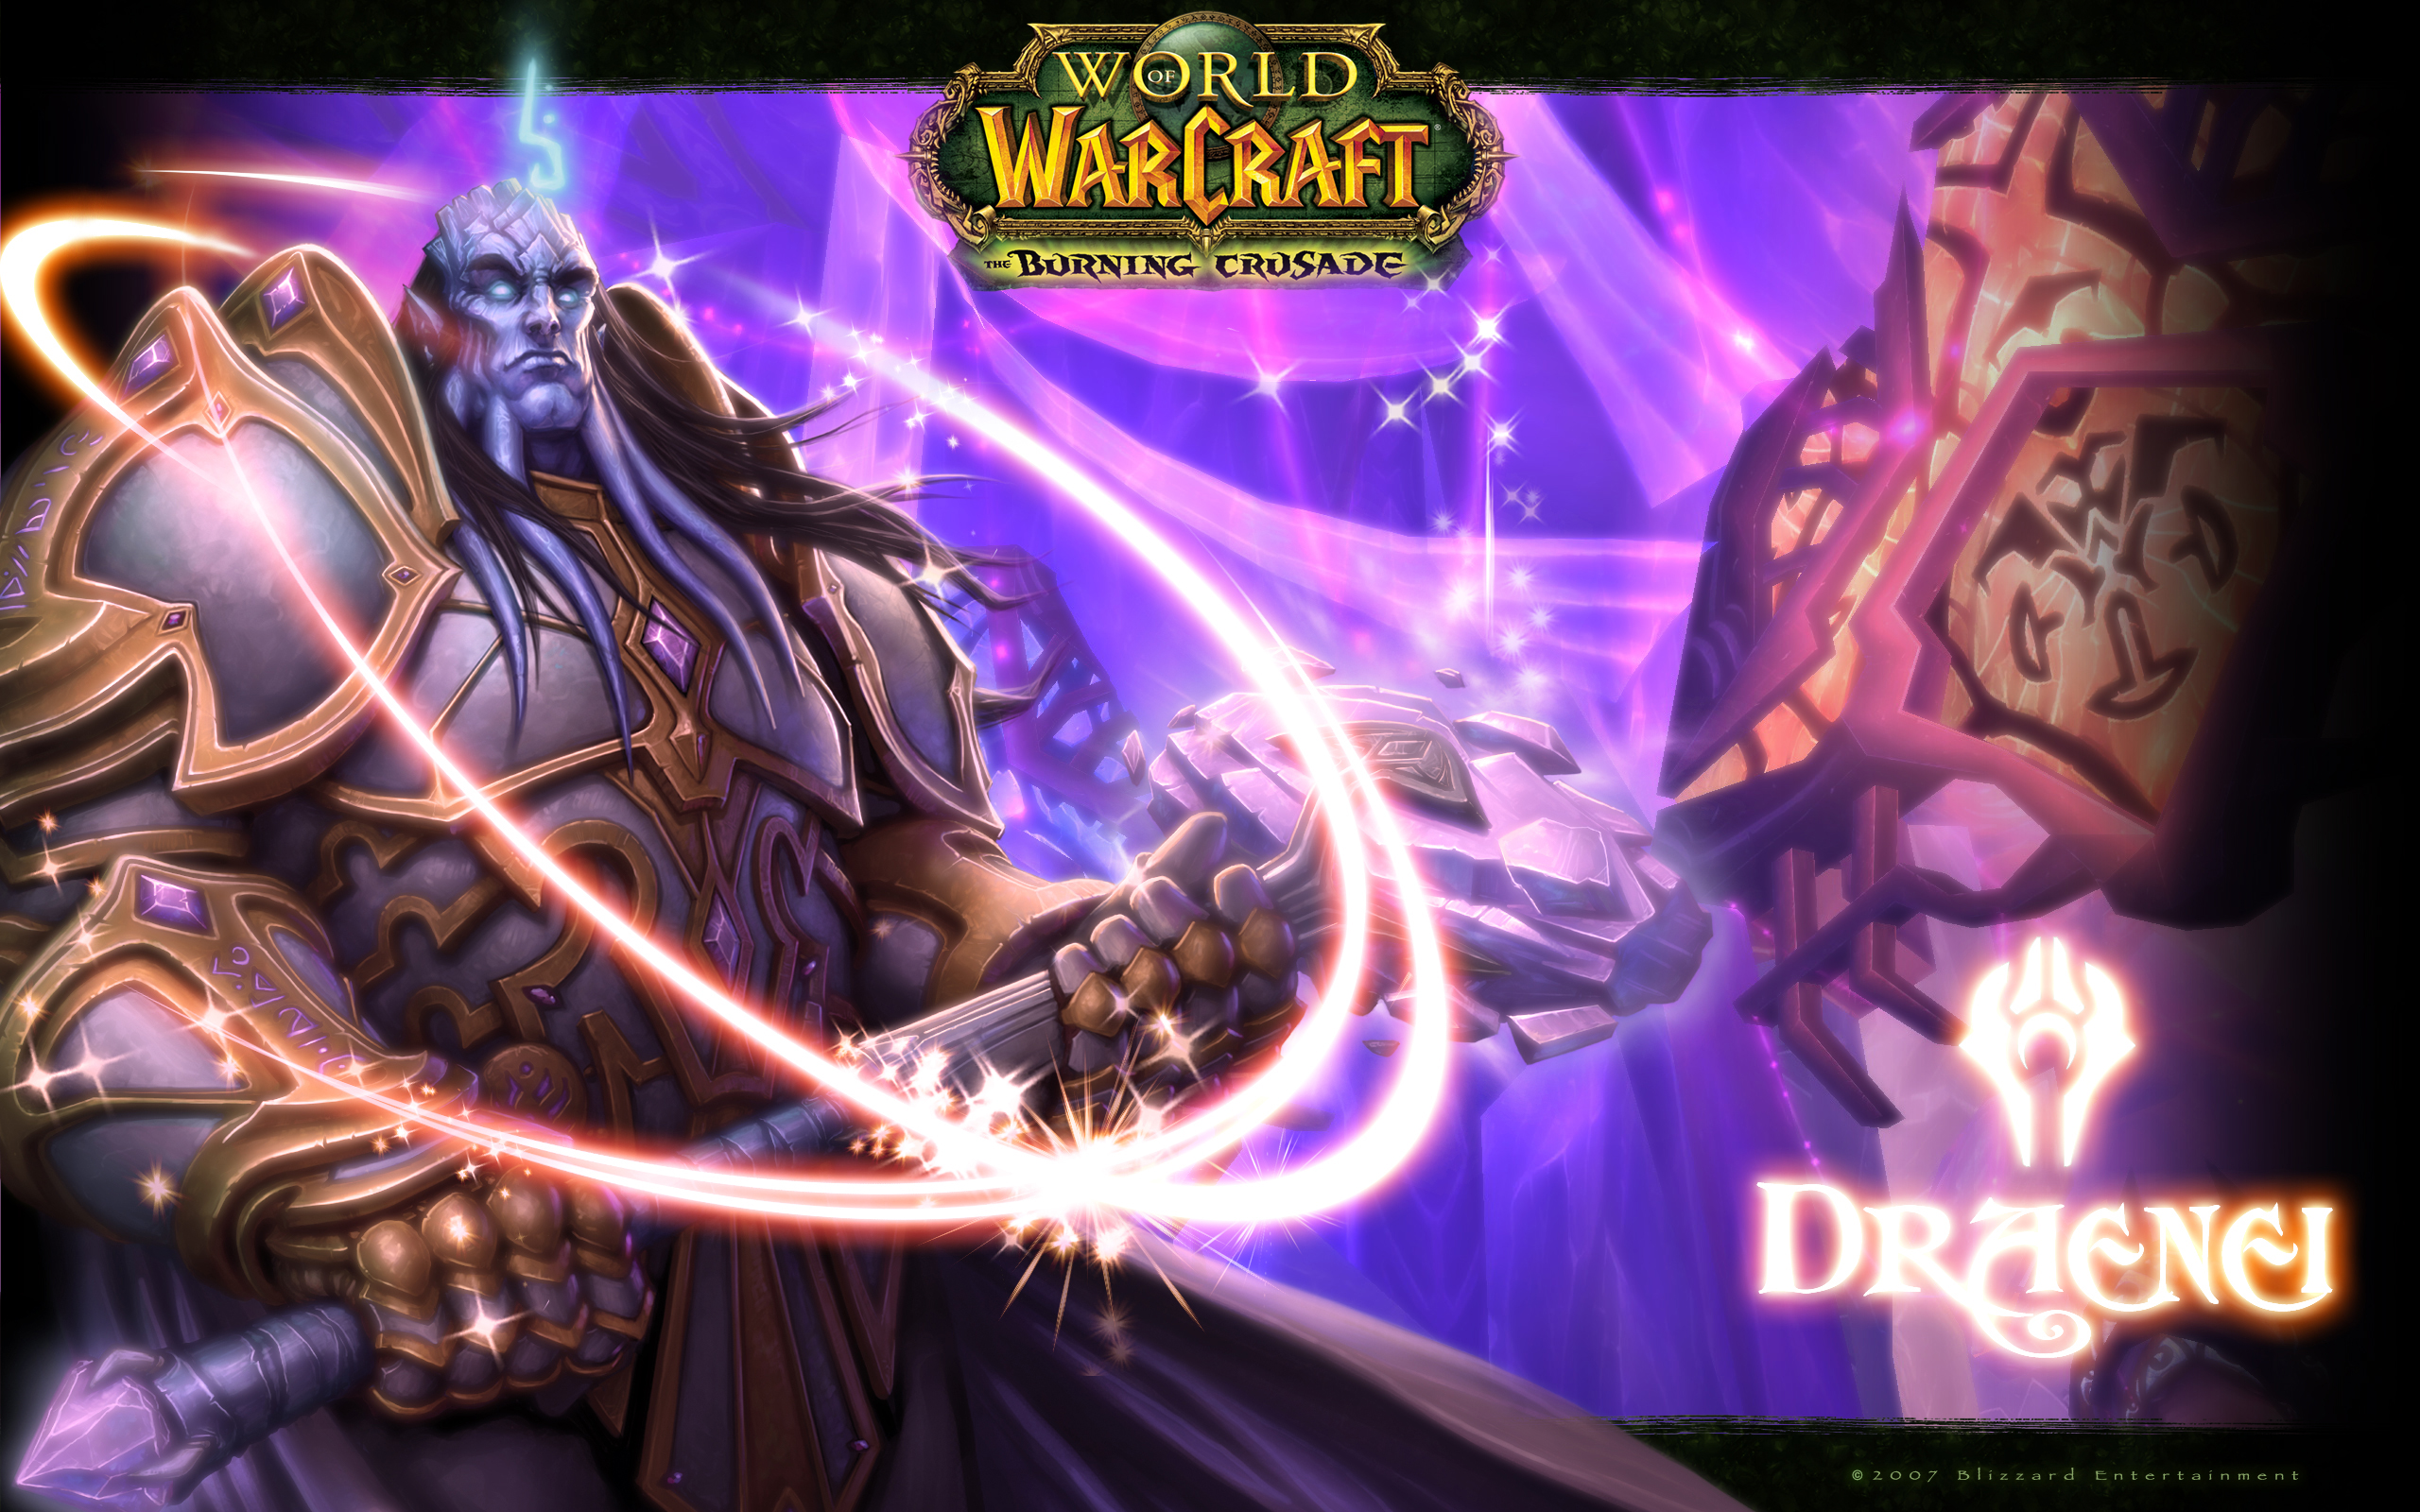 World Of Warcraft Draenei World Of Warcraft The Burning Crusade 2560x1600